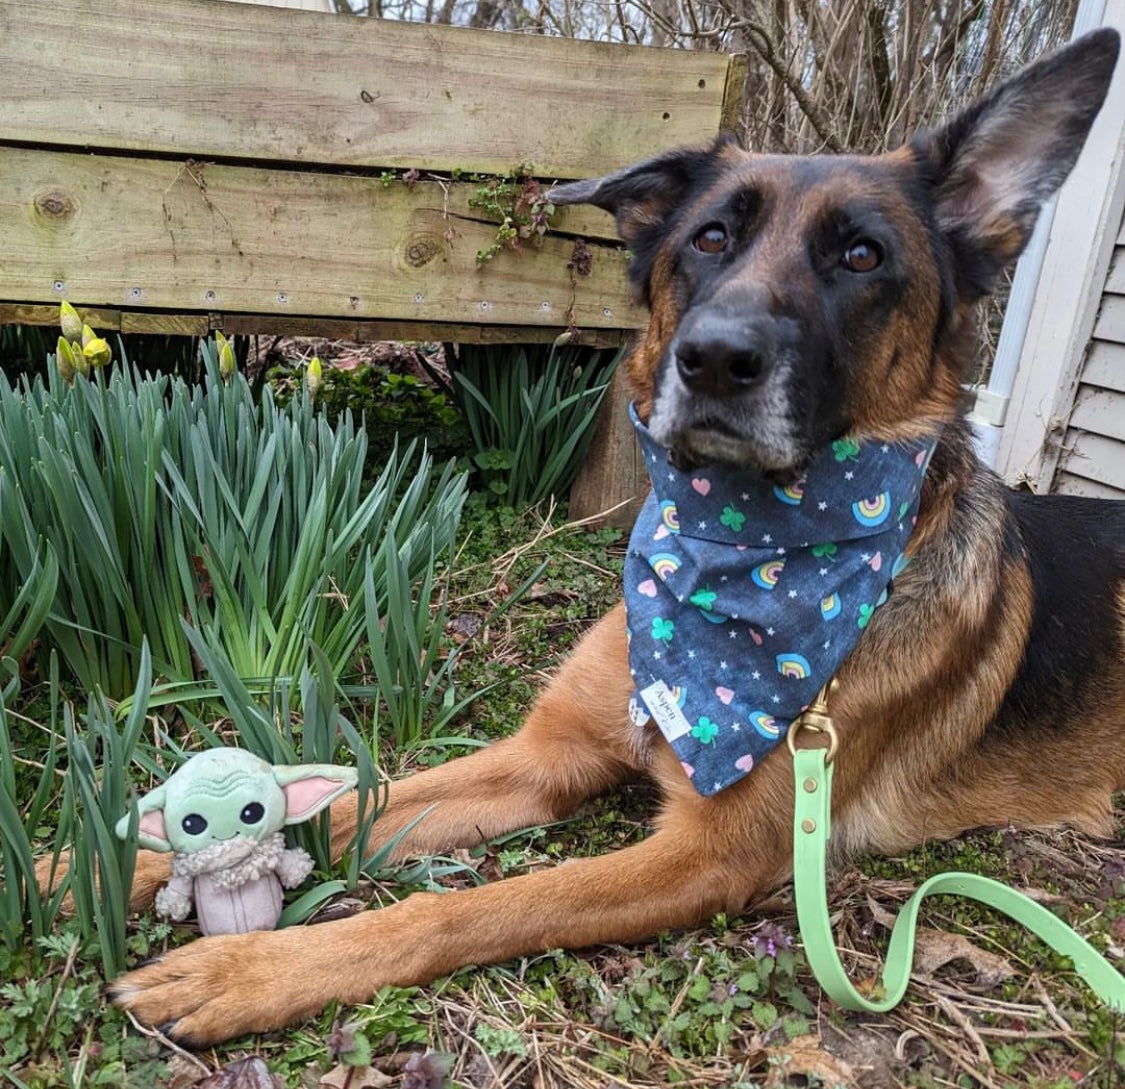 Lucky Pup - St. Patrick's Day Dog Bandana